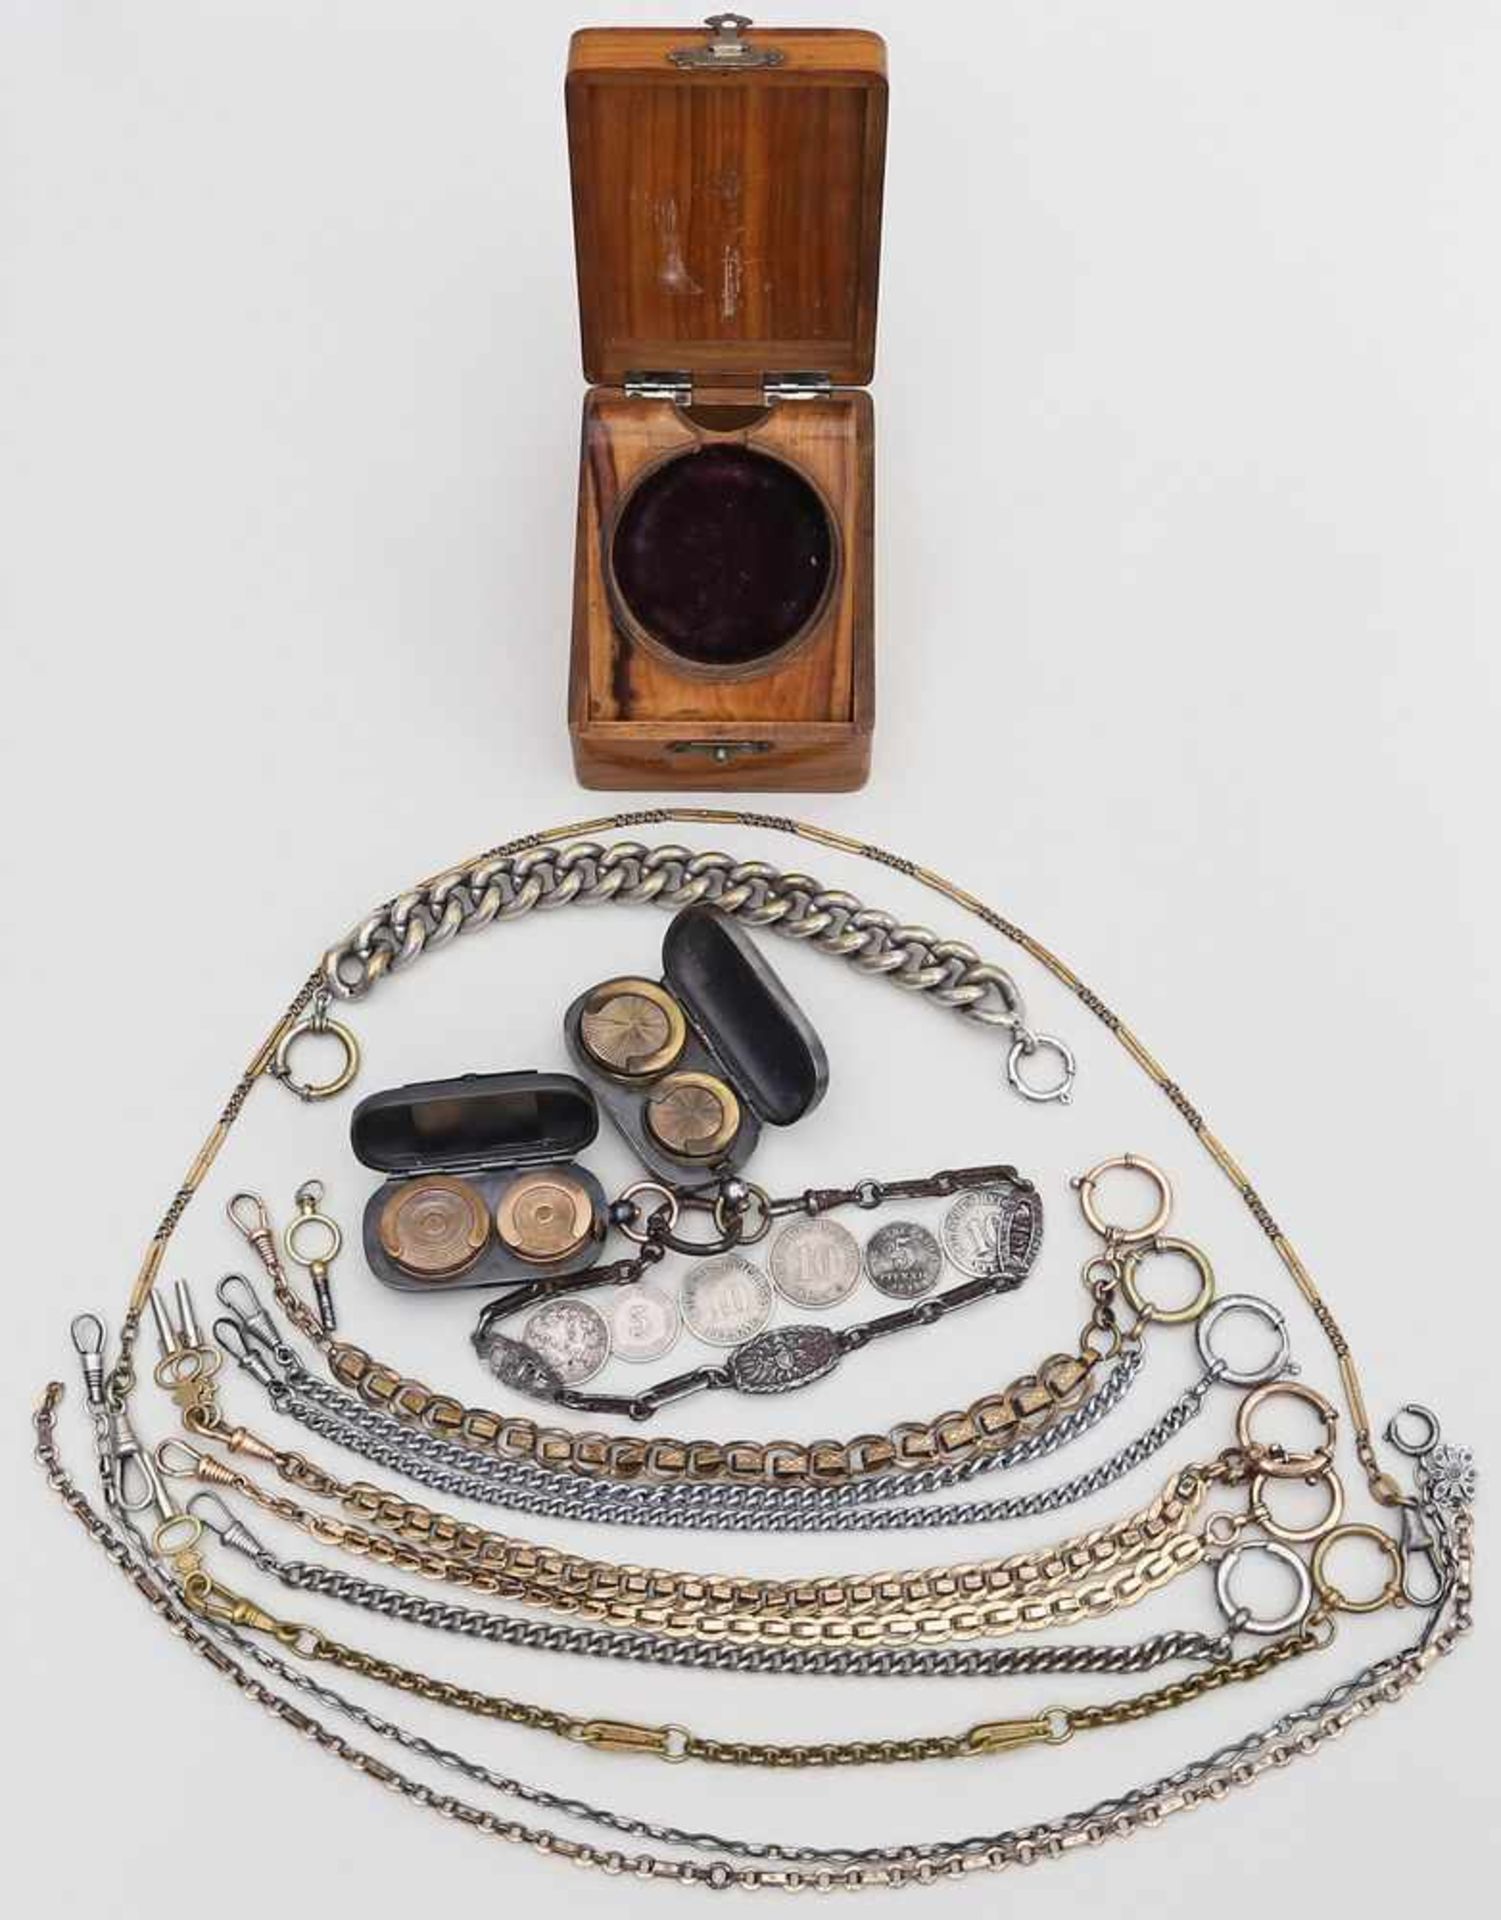 Posten Uhrenketten,einige Uhrenschlüssel und Taschenuhrständer aus Holz. Beigabe 2 Geldetuis aus